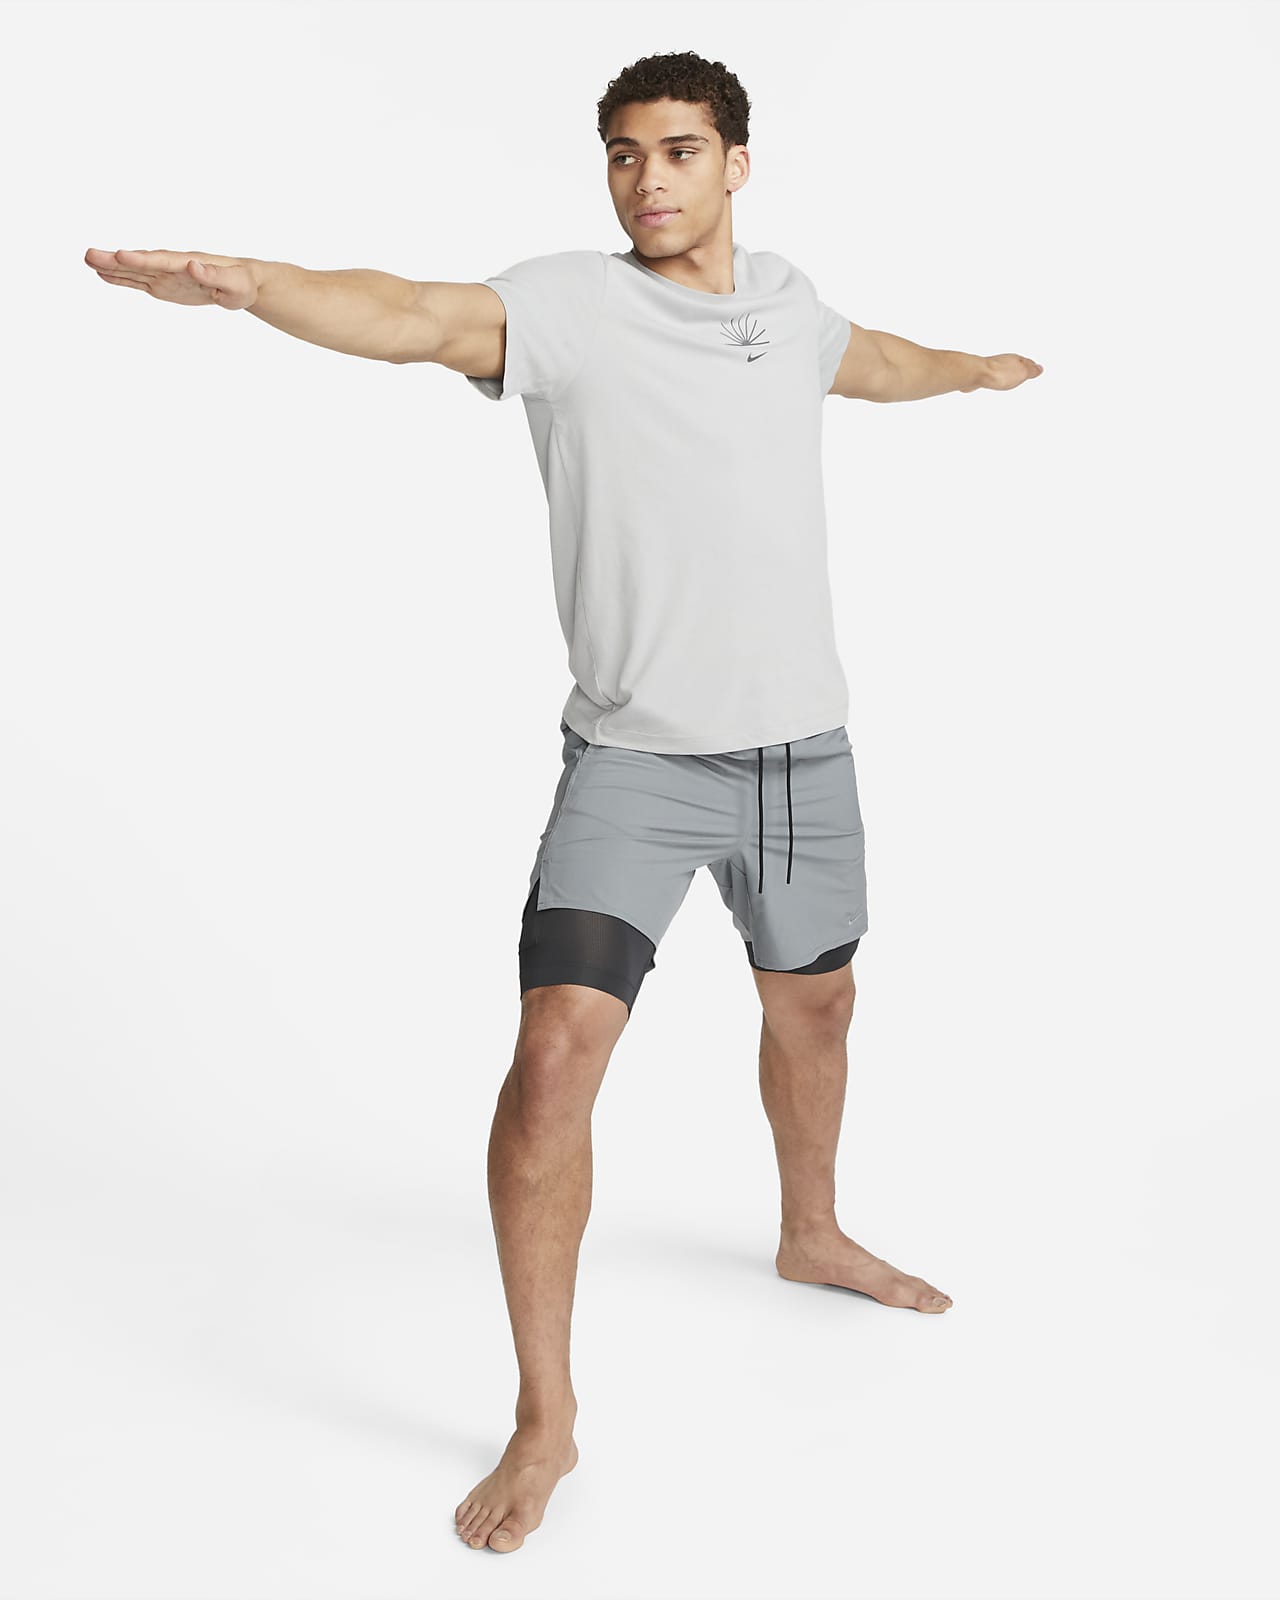 Nike Unlimited vielseitige Dri-FIT 2-in-1-Shorts (ca. 18 cm) für Herren